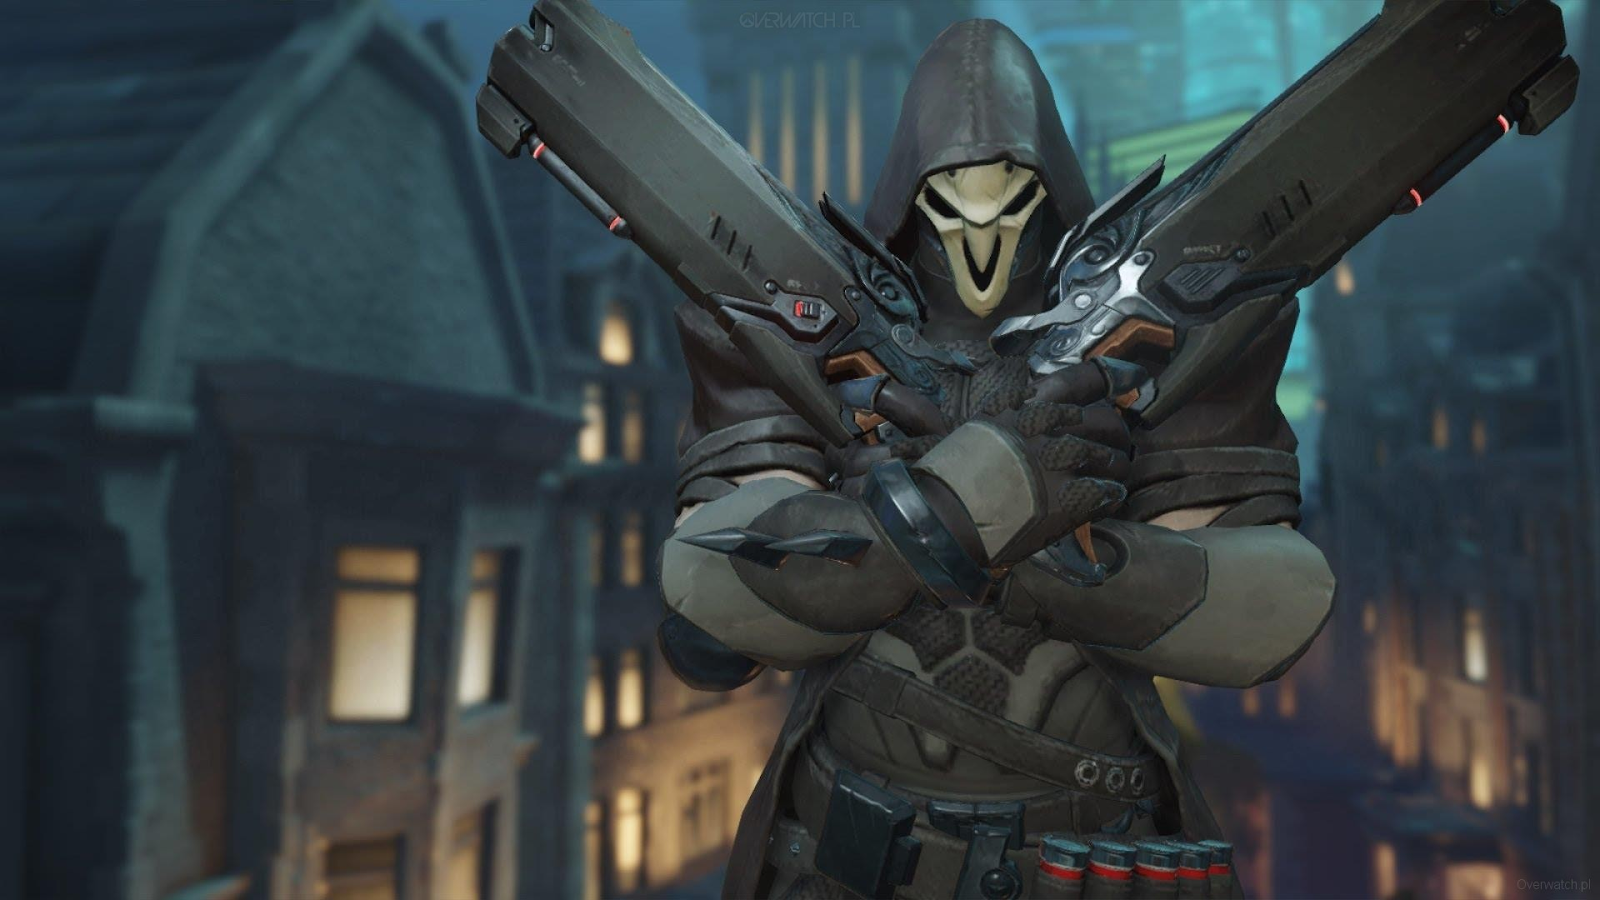 Le méchant d'Overwatch 2, Reaper, croise ses fusils de chasse tout en regardant la caméra d'un air menaçant derrière son masque. 